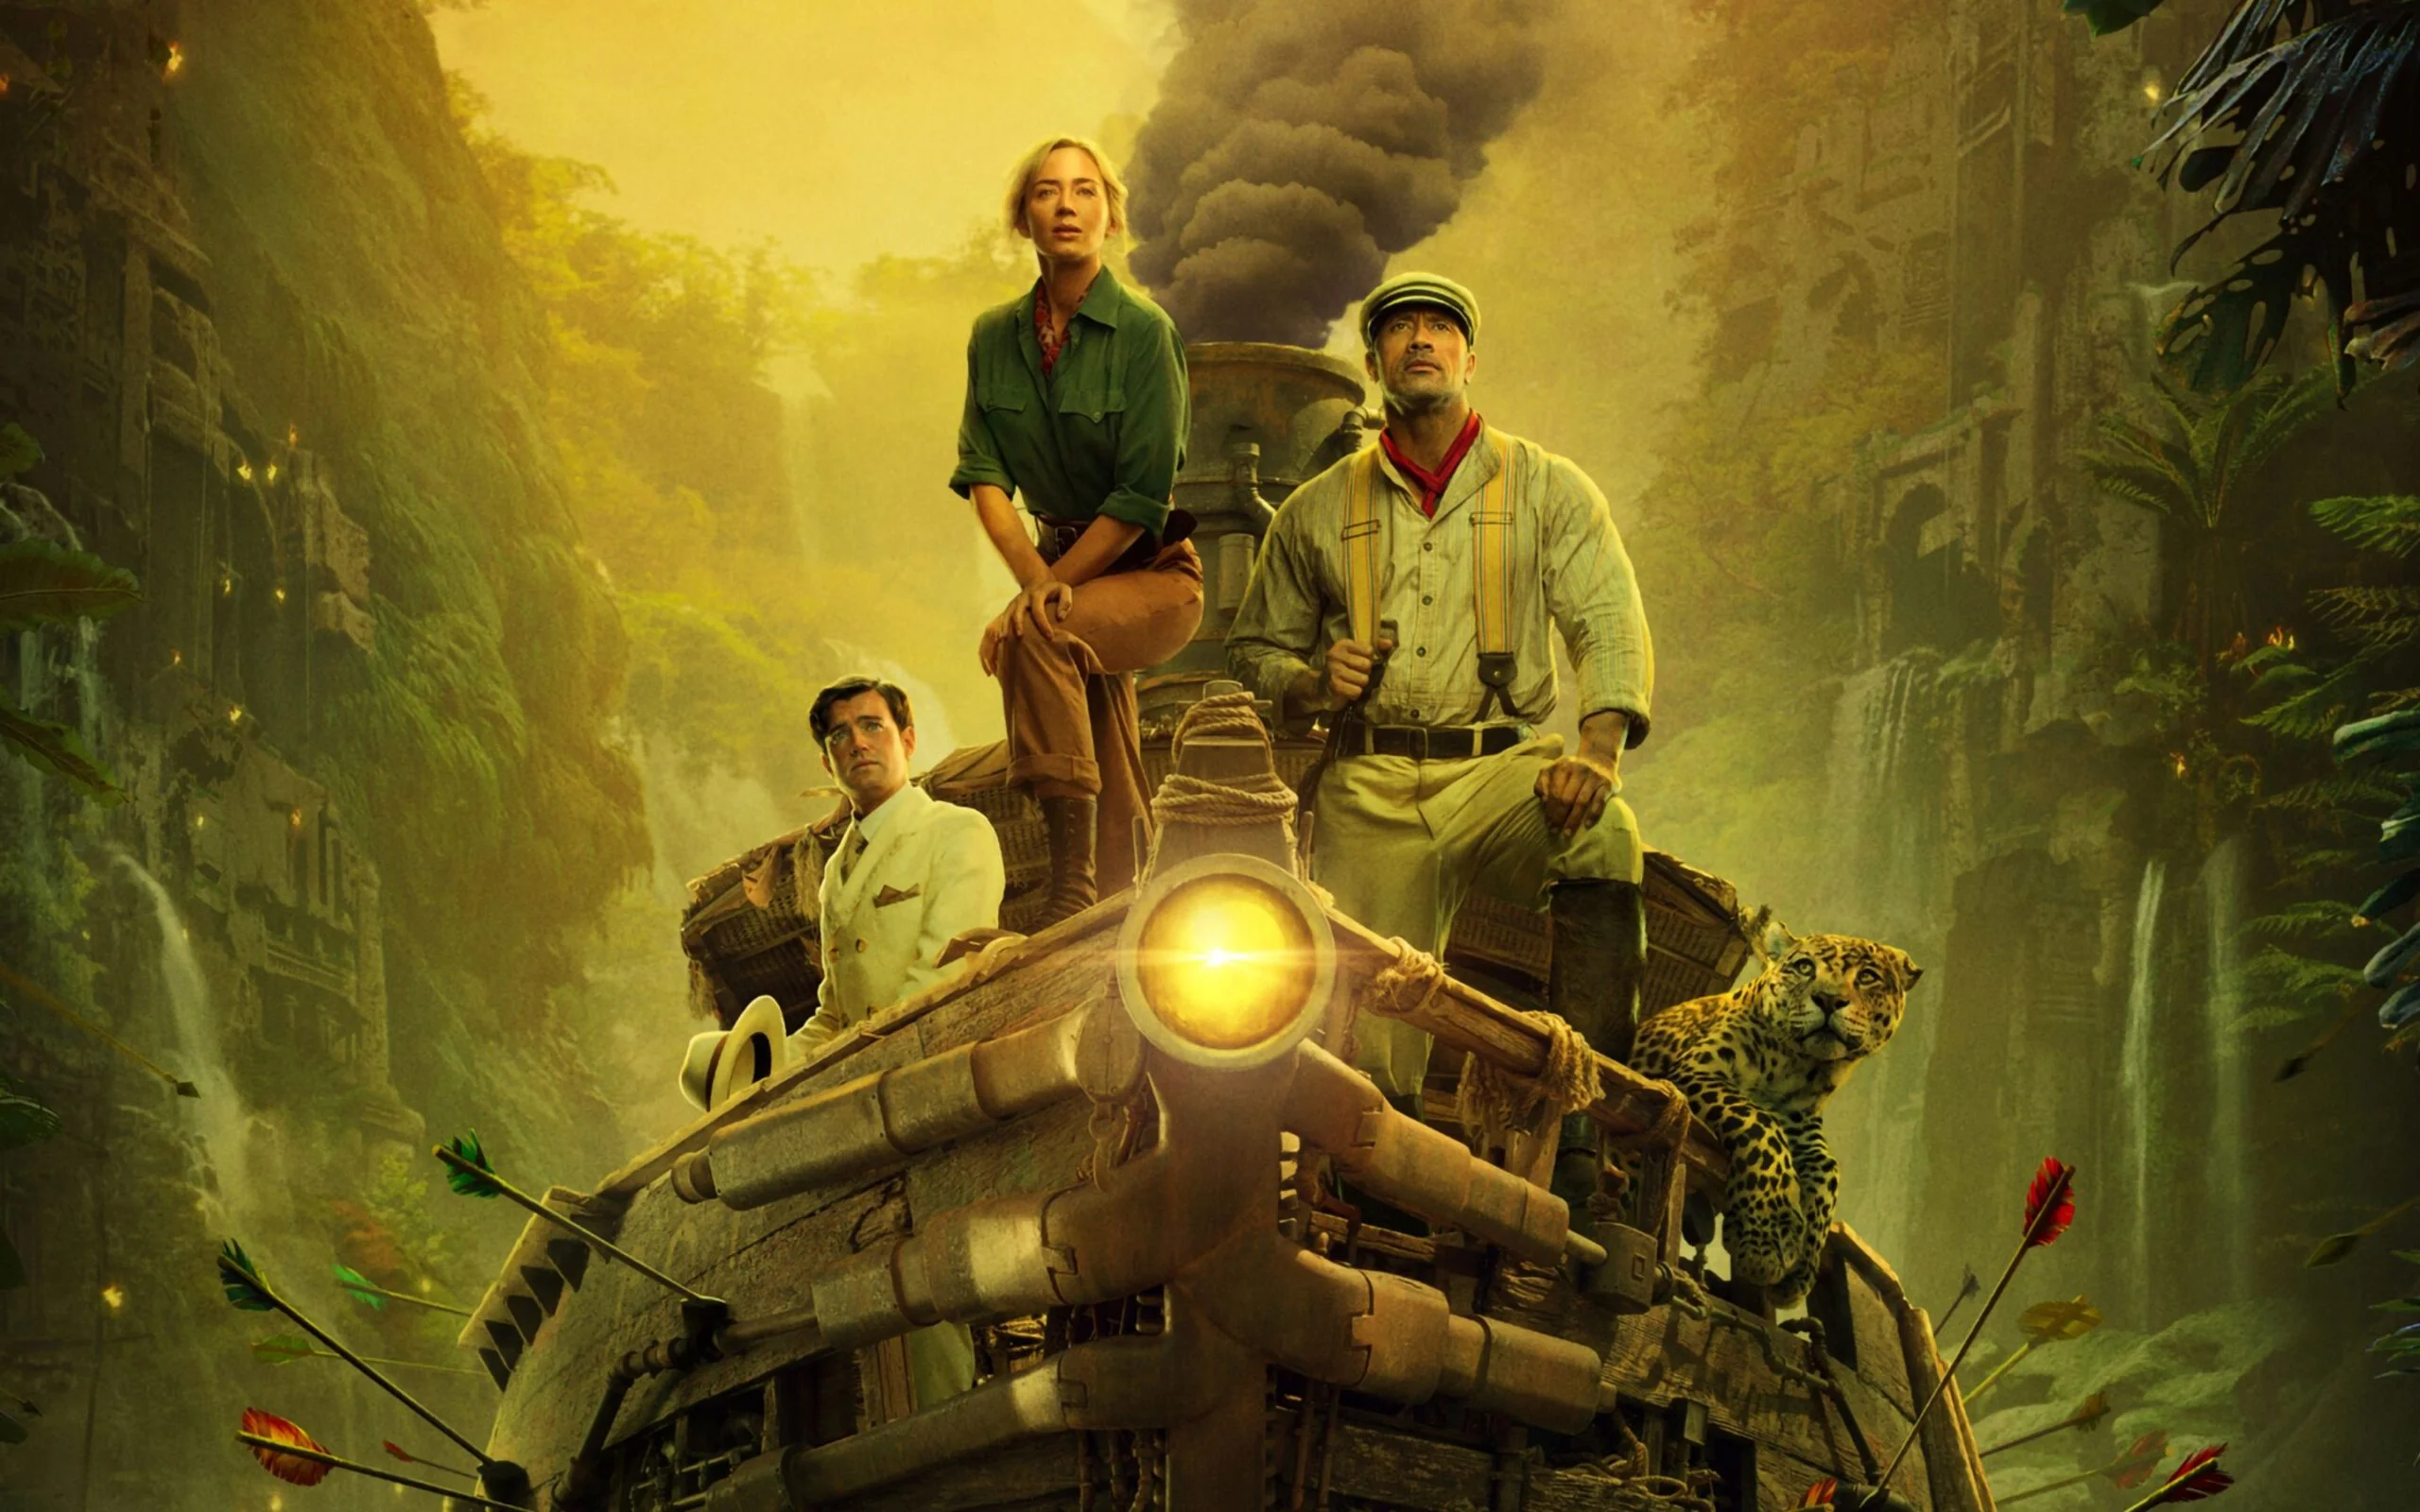 اعلام رسمی: ساخت دنباله فیلم Jungle Cruise تایید شد